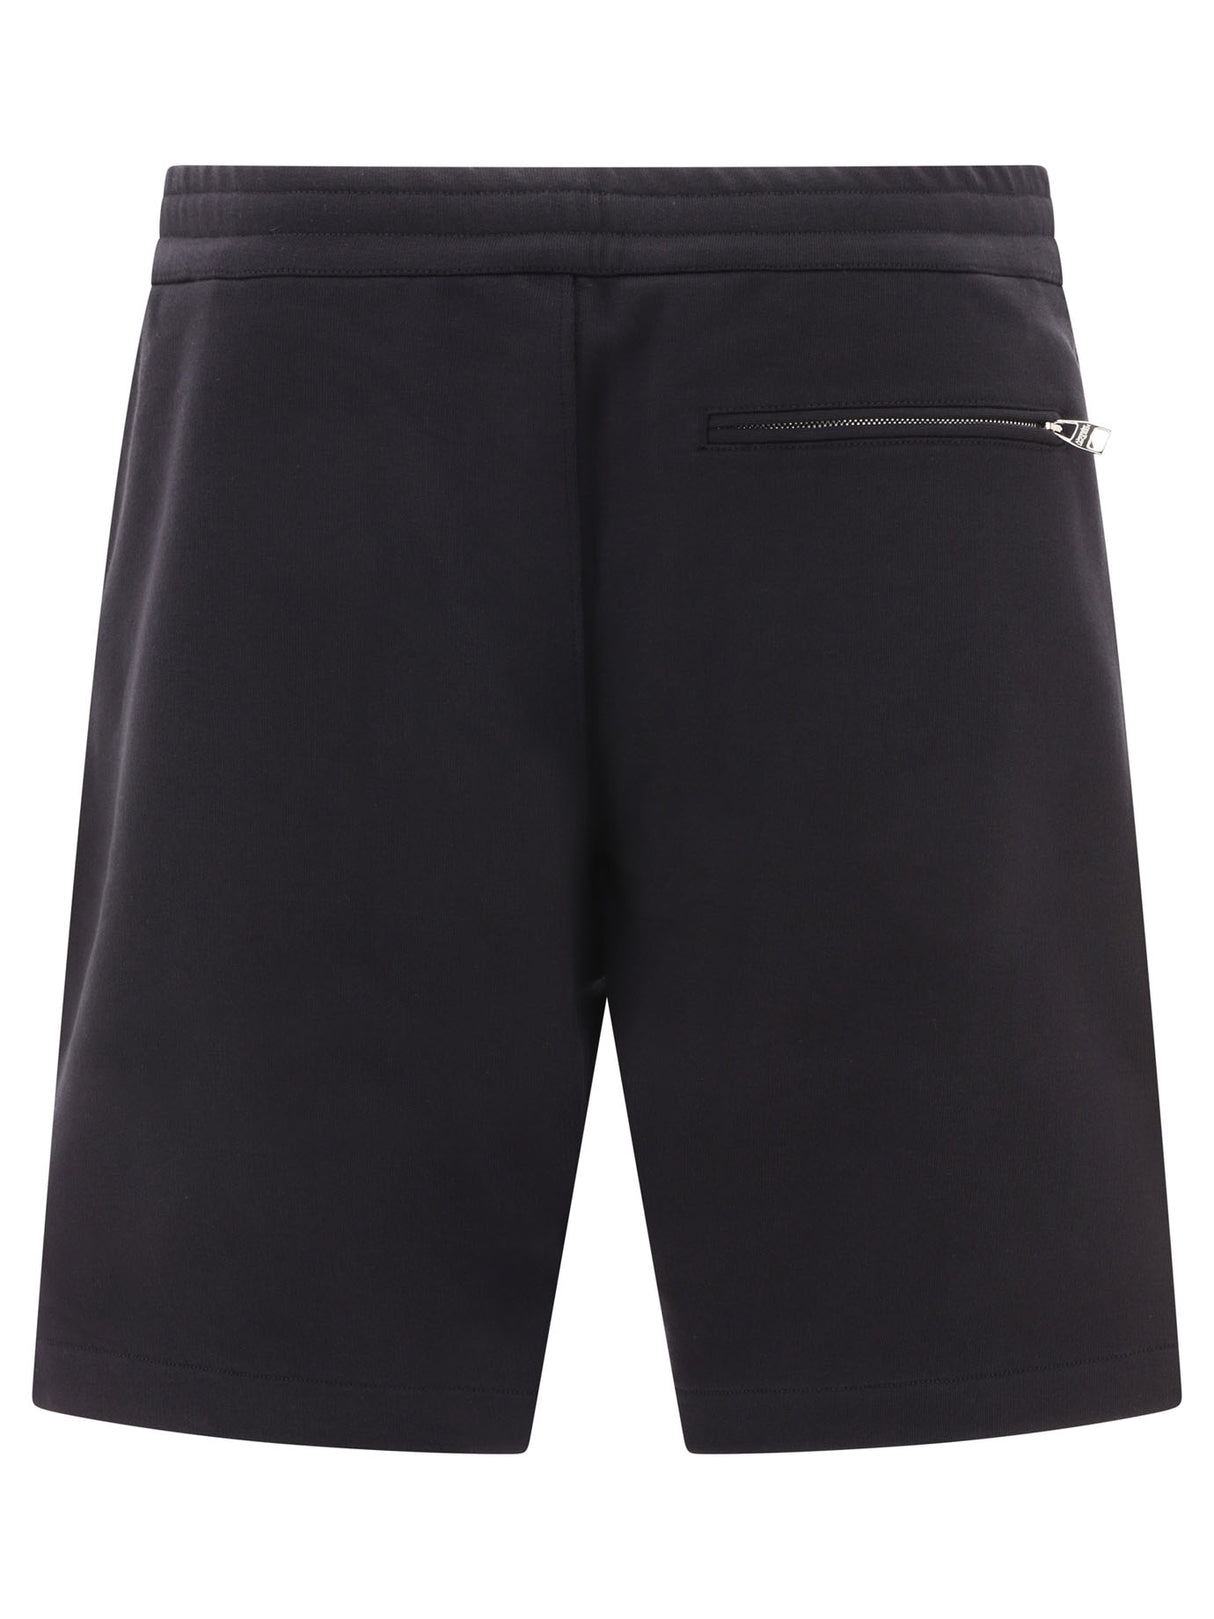 男士Graffiti纹短裤 - 正常版型, 黑色, SS24